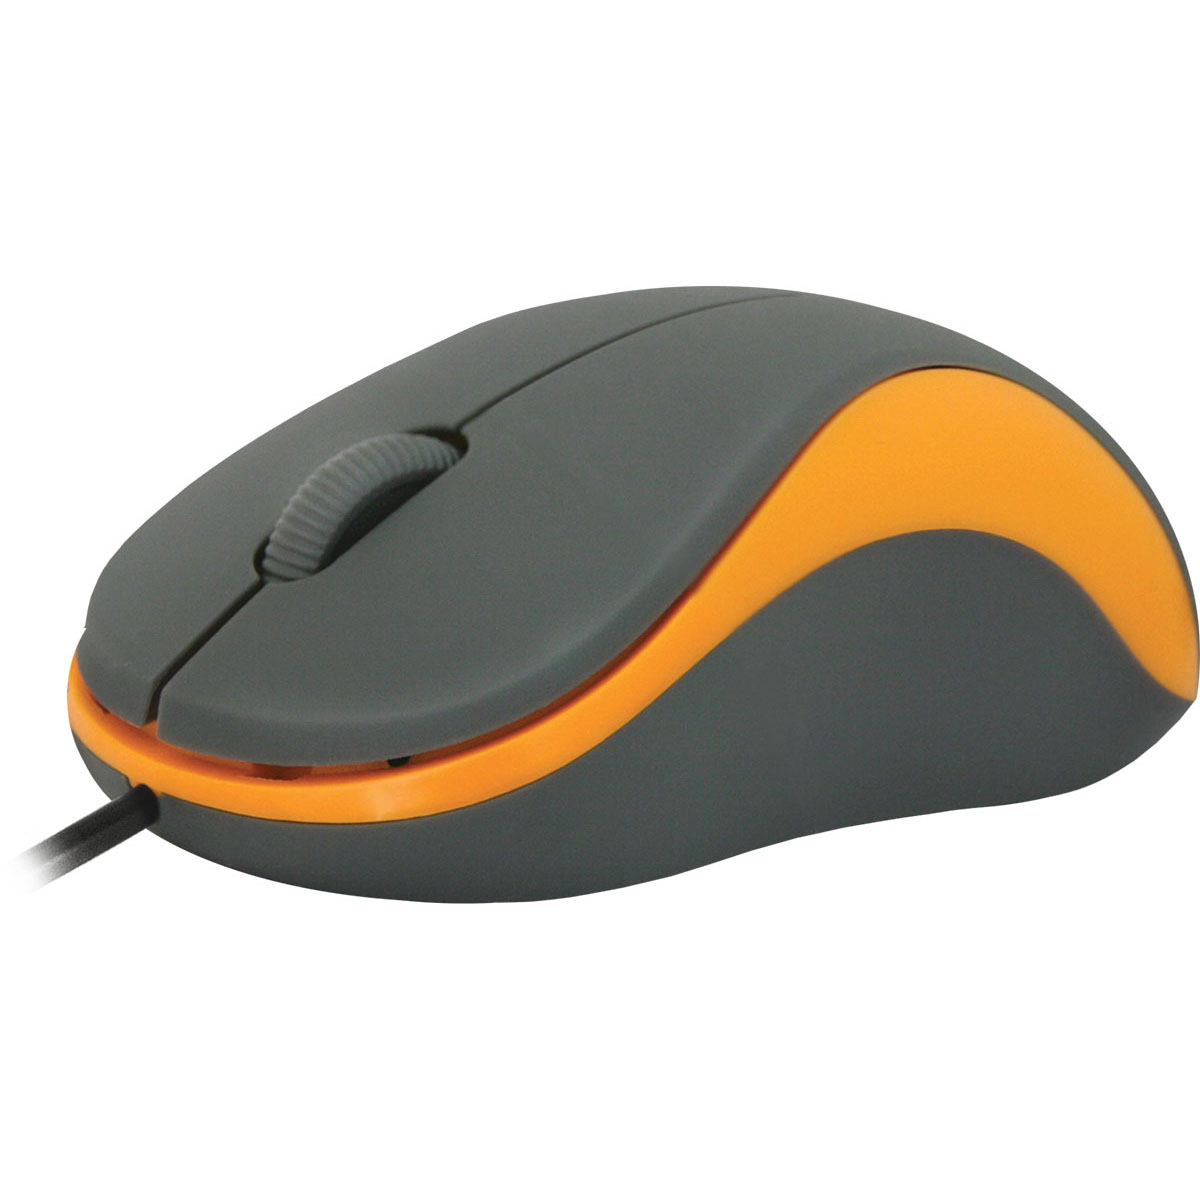 Компьютерная мышь DEFENDER Accura MS-970, проводная, цвет серо оранжевый